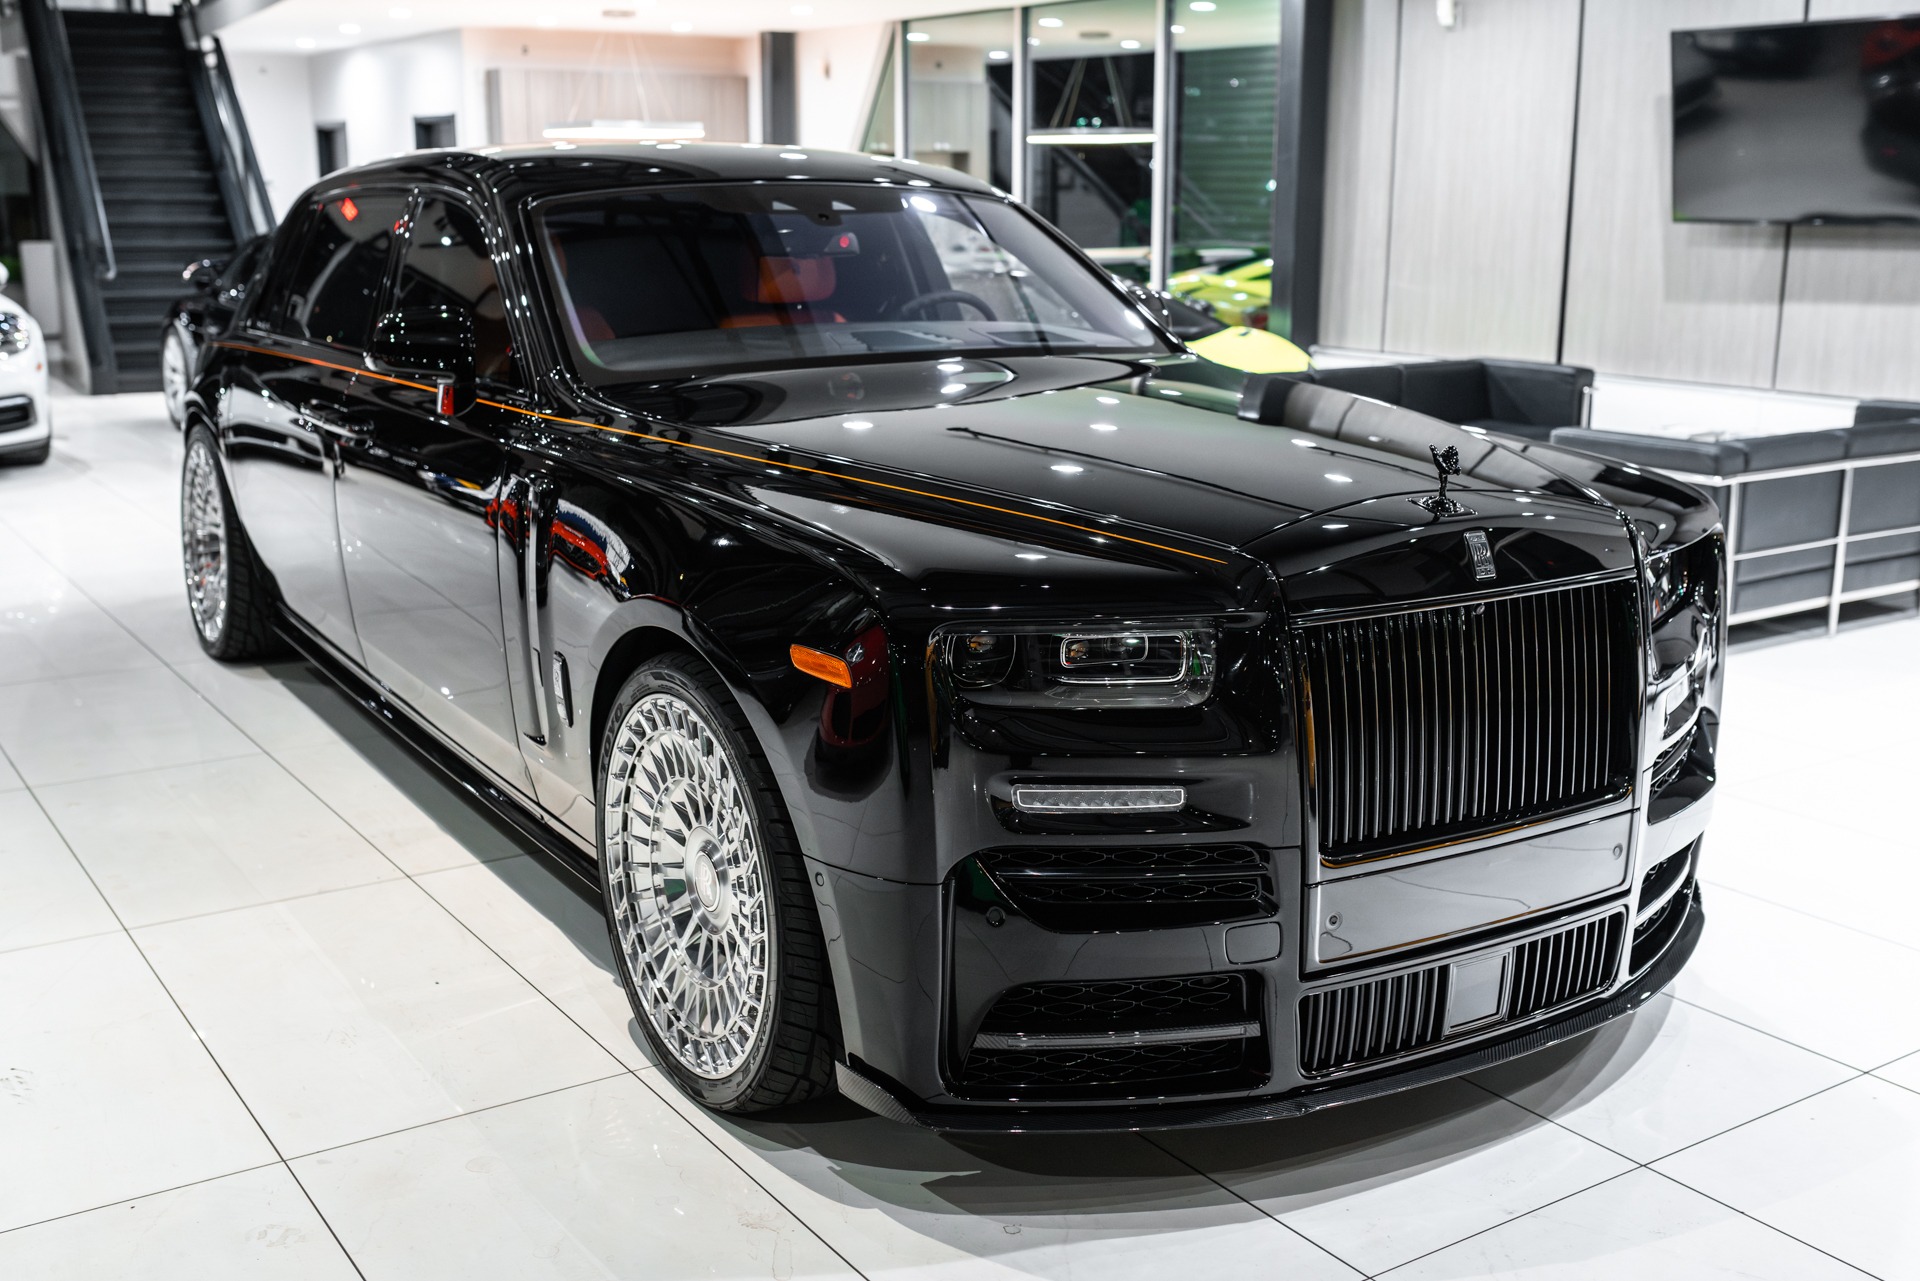 Rolls-Royce Phantom Extended Wheelbase Price